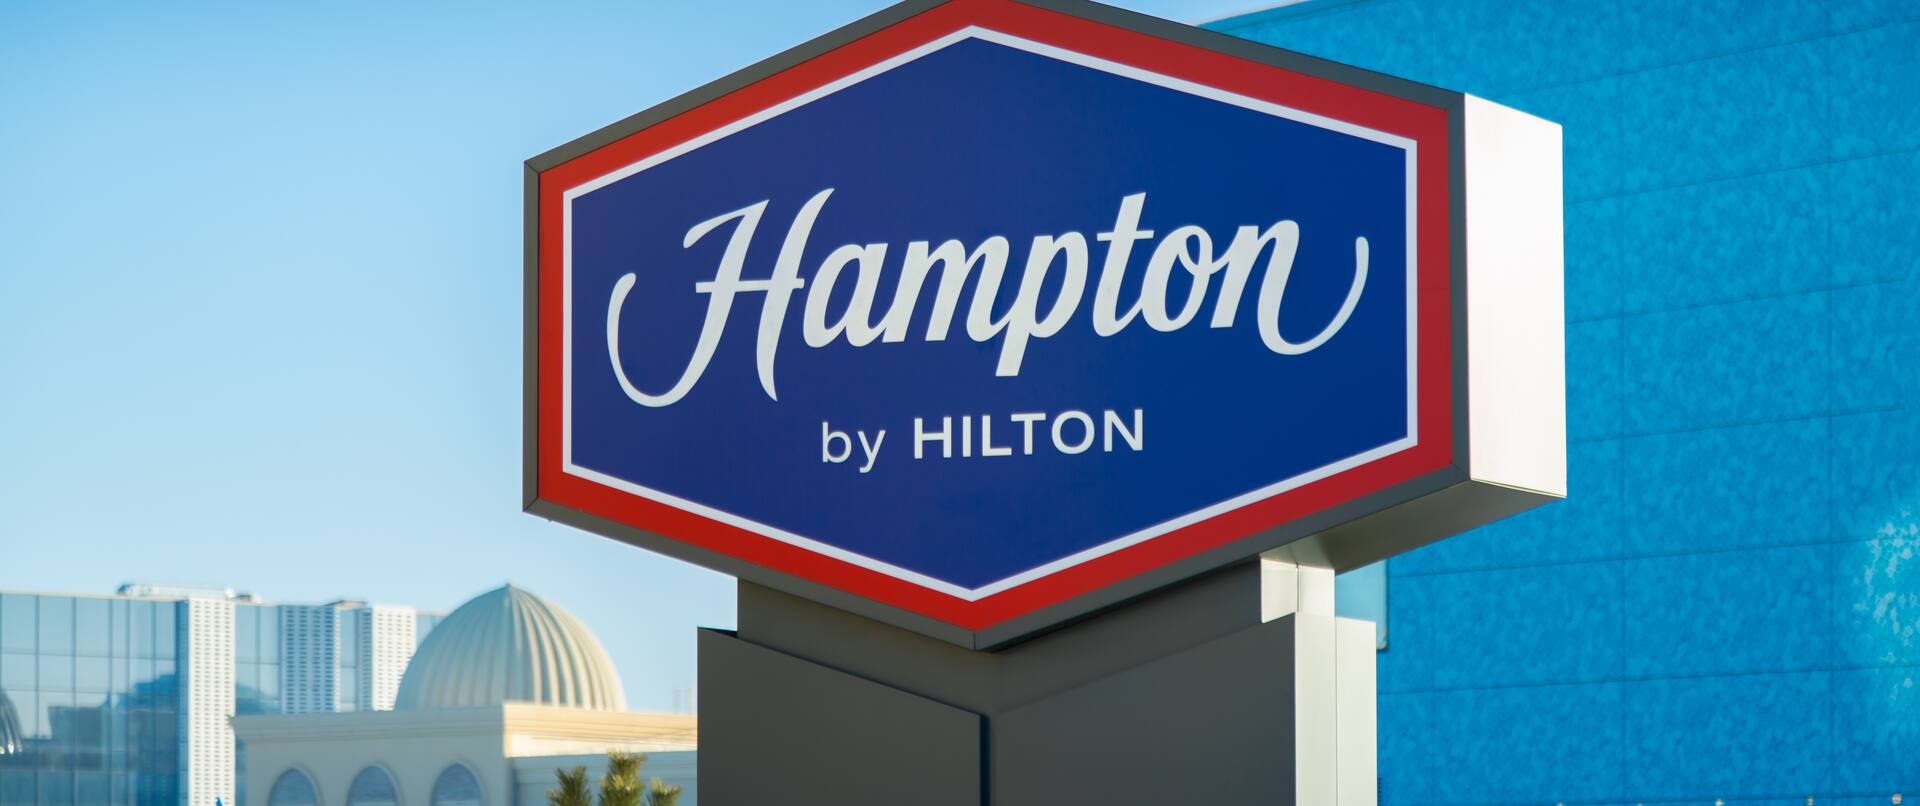 Hampton by Hilton sign 